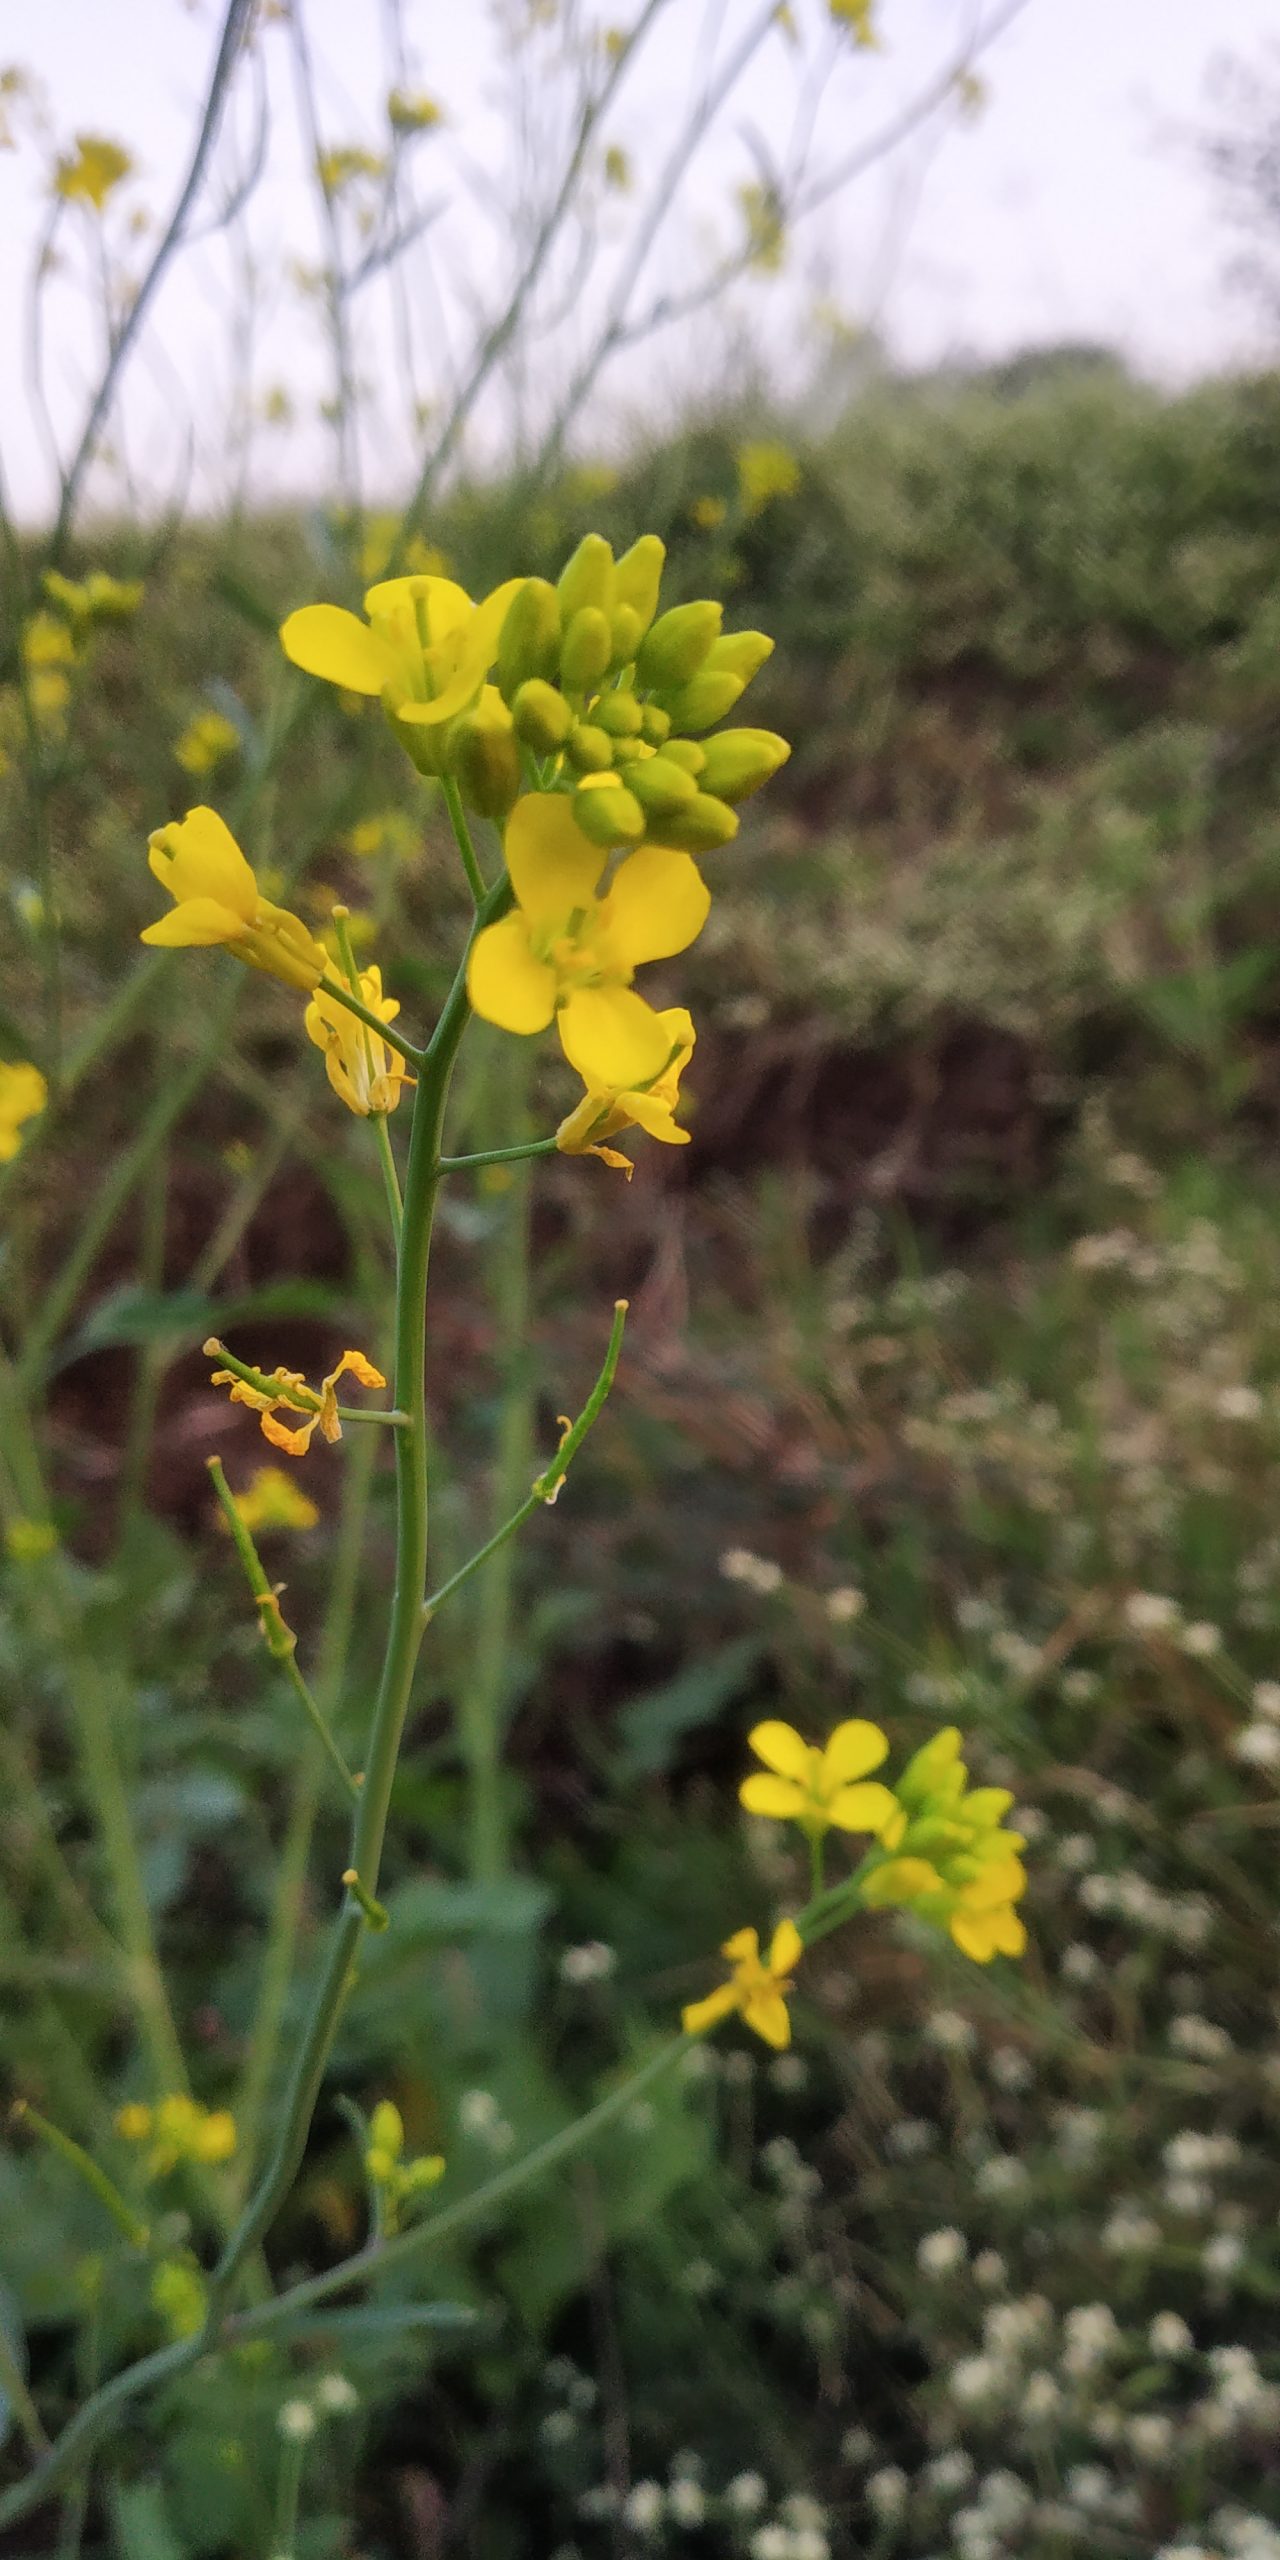 Mustard flower on crop